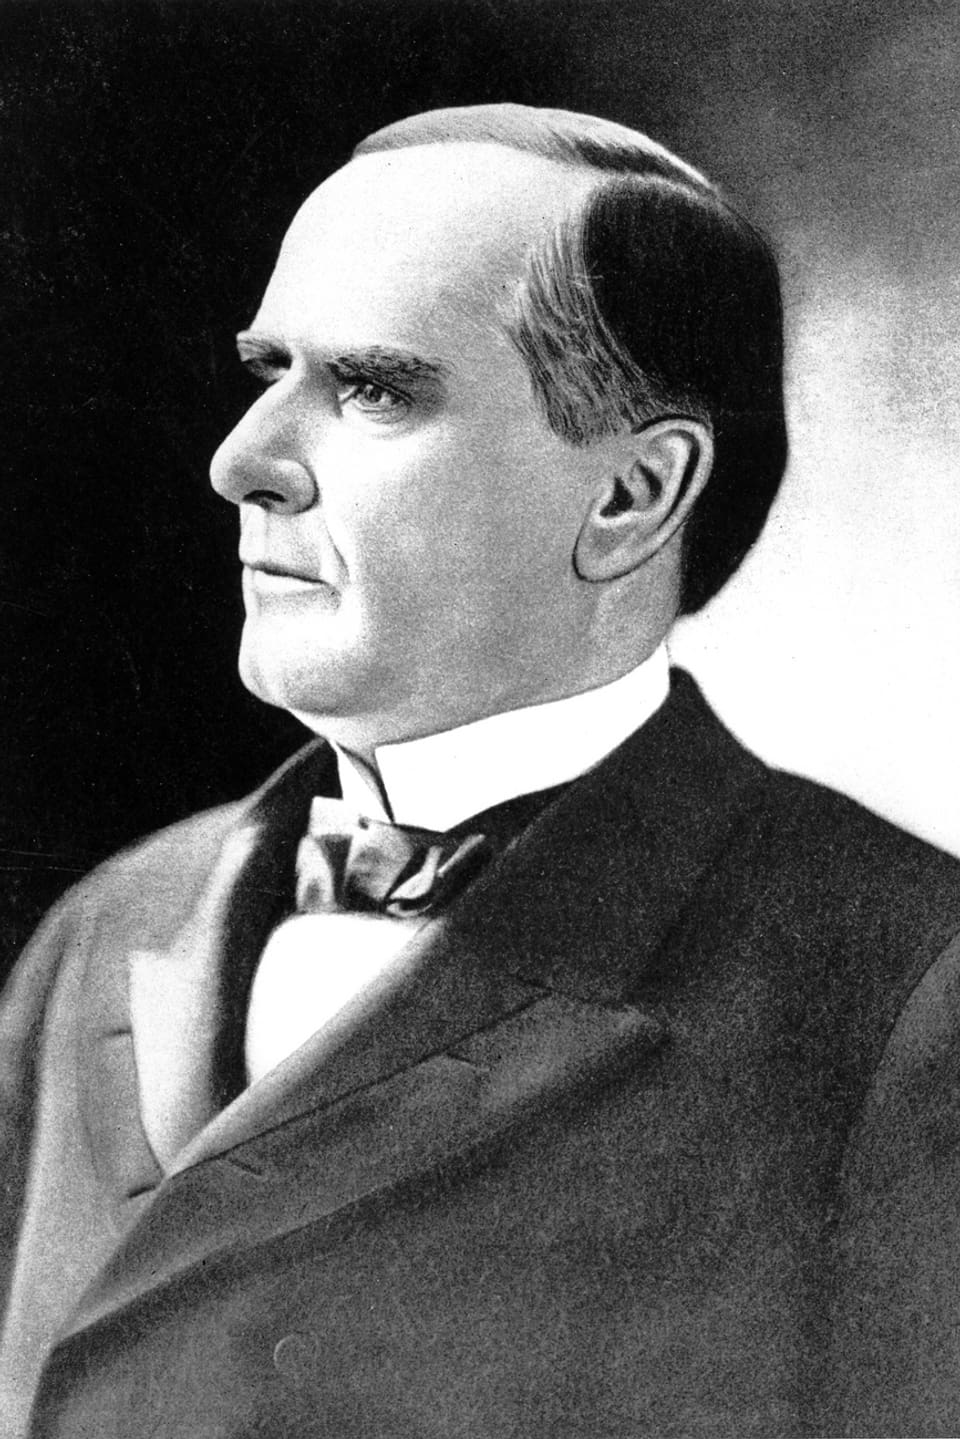 Gemaltes Porträt des Präsidenten McKinley.